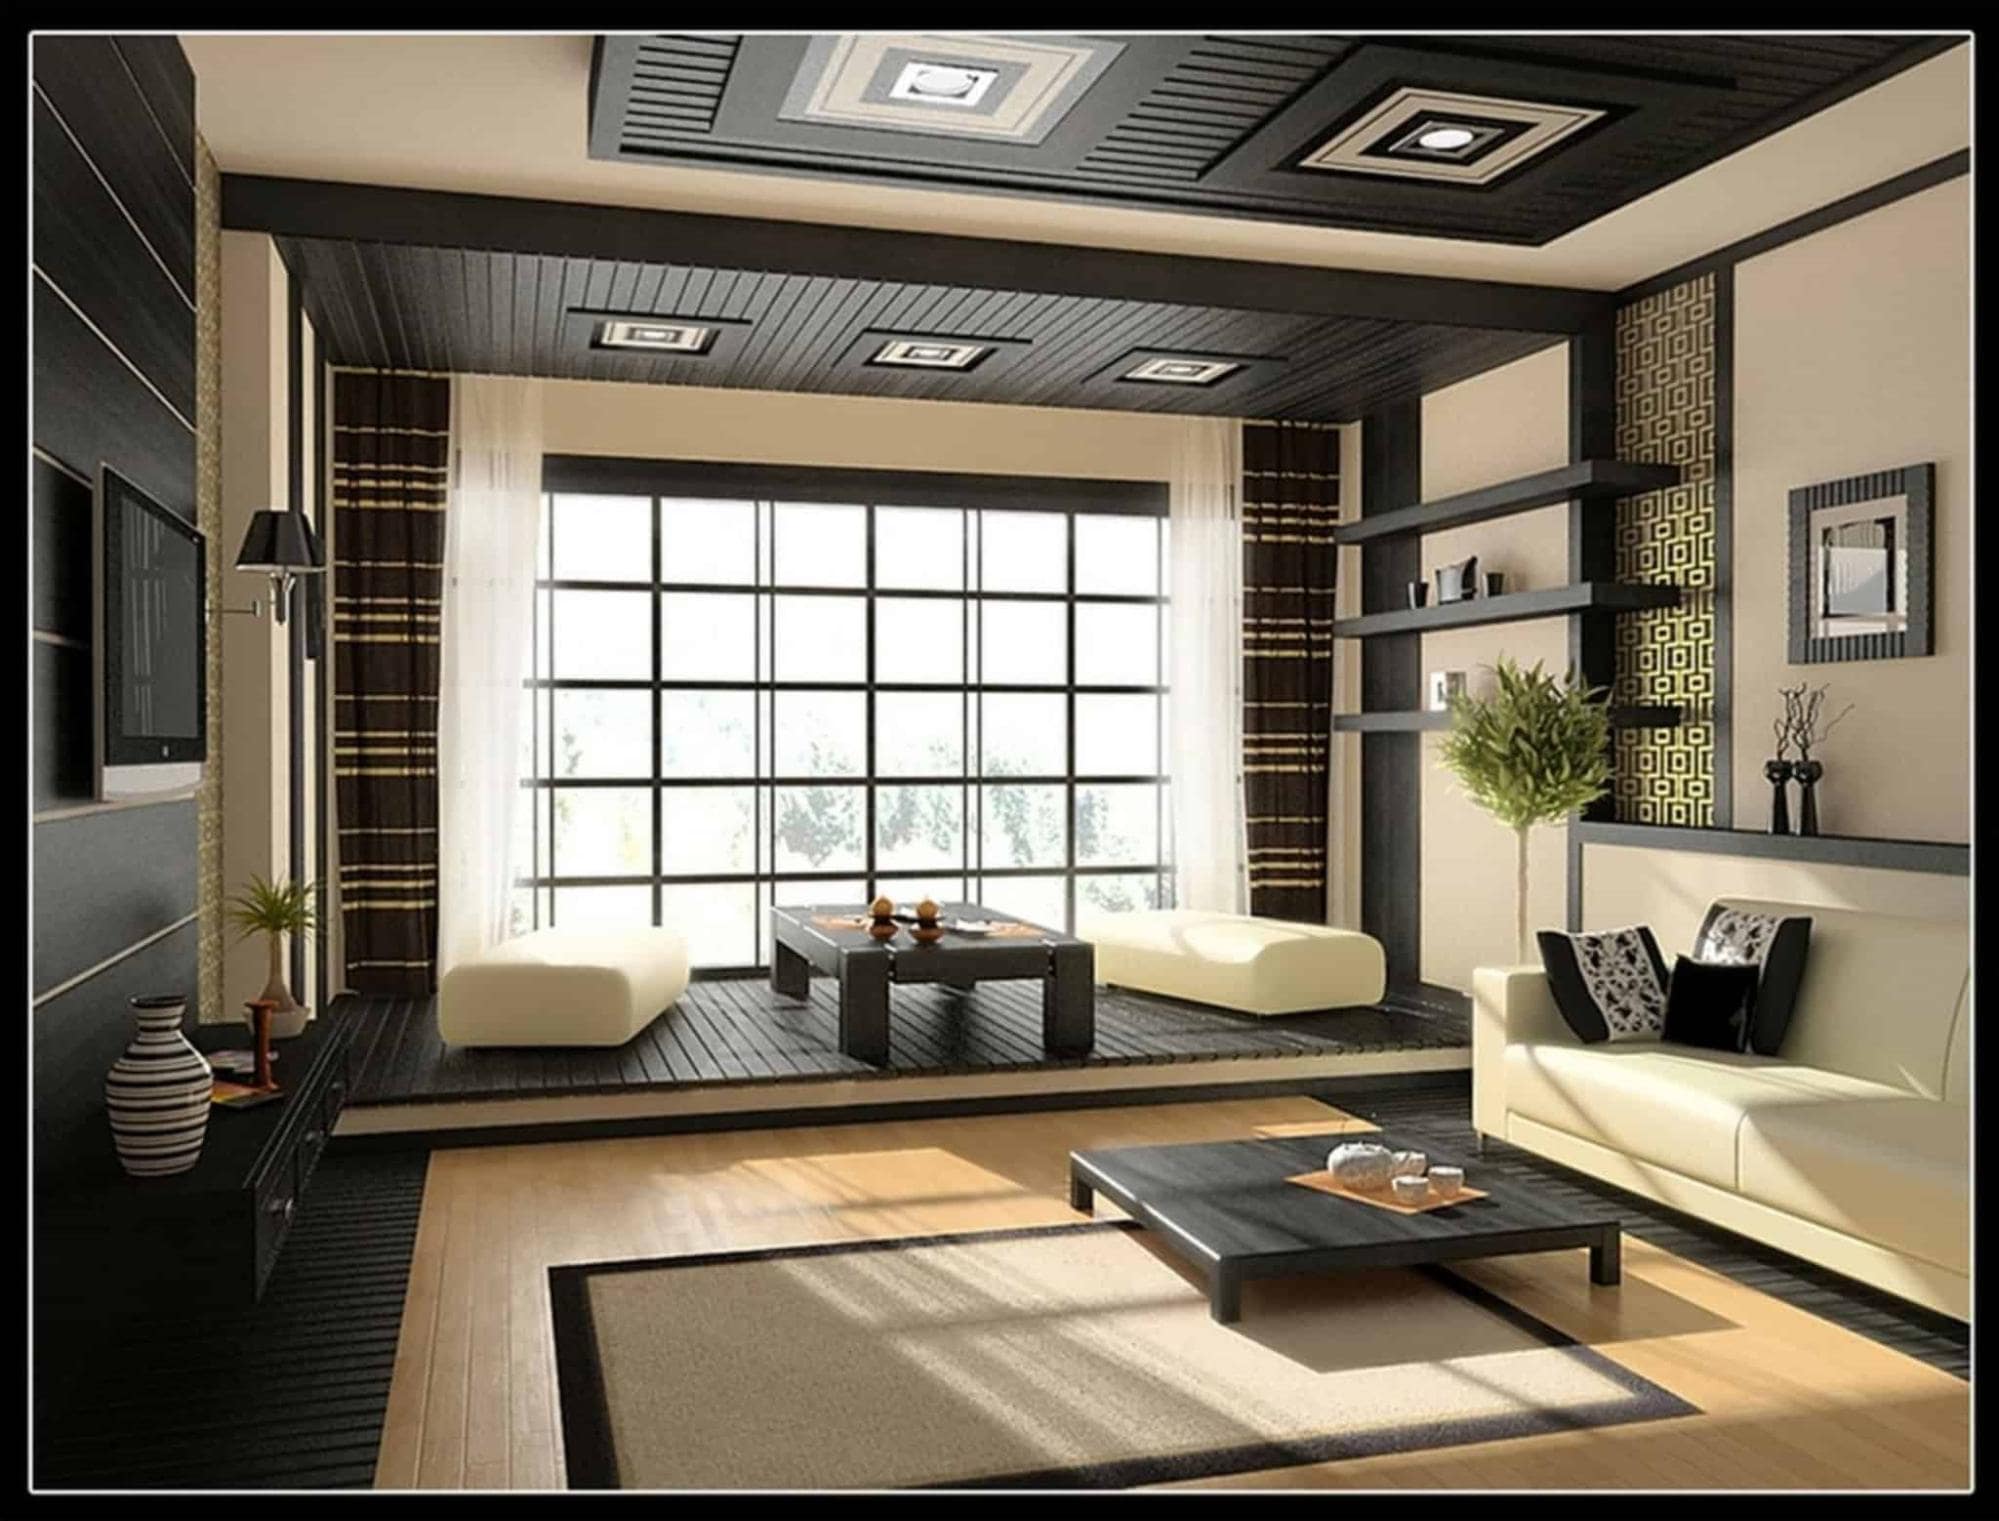 Mẫu phòng khách Nhật Bản đơn giản: Sự kết hợp hài hòa giữa văn hoá và kiến trúc. Mẫu phòng khách Nhật Bản đơn giản mang đến không gian sống tối giản, nhưng không kém phần sang trọng. Với những thiết kế tối giản, không gian sinh hoạt trở nên tiện nghi và rất dễ chịu.